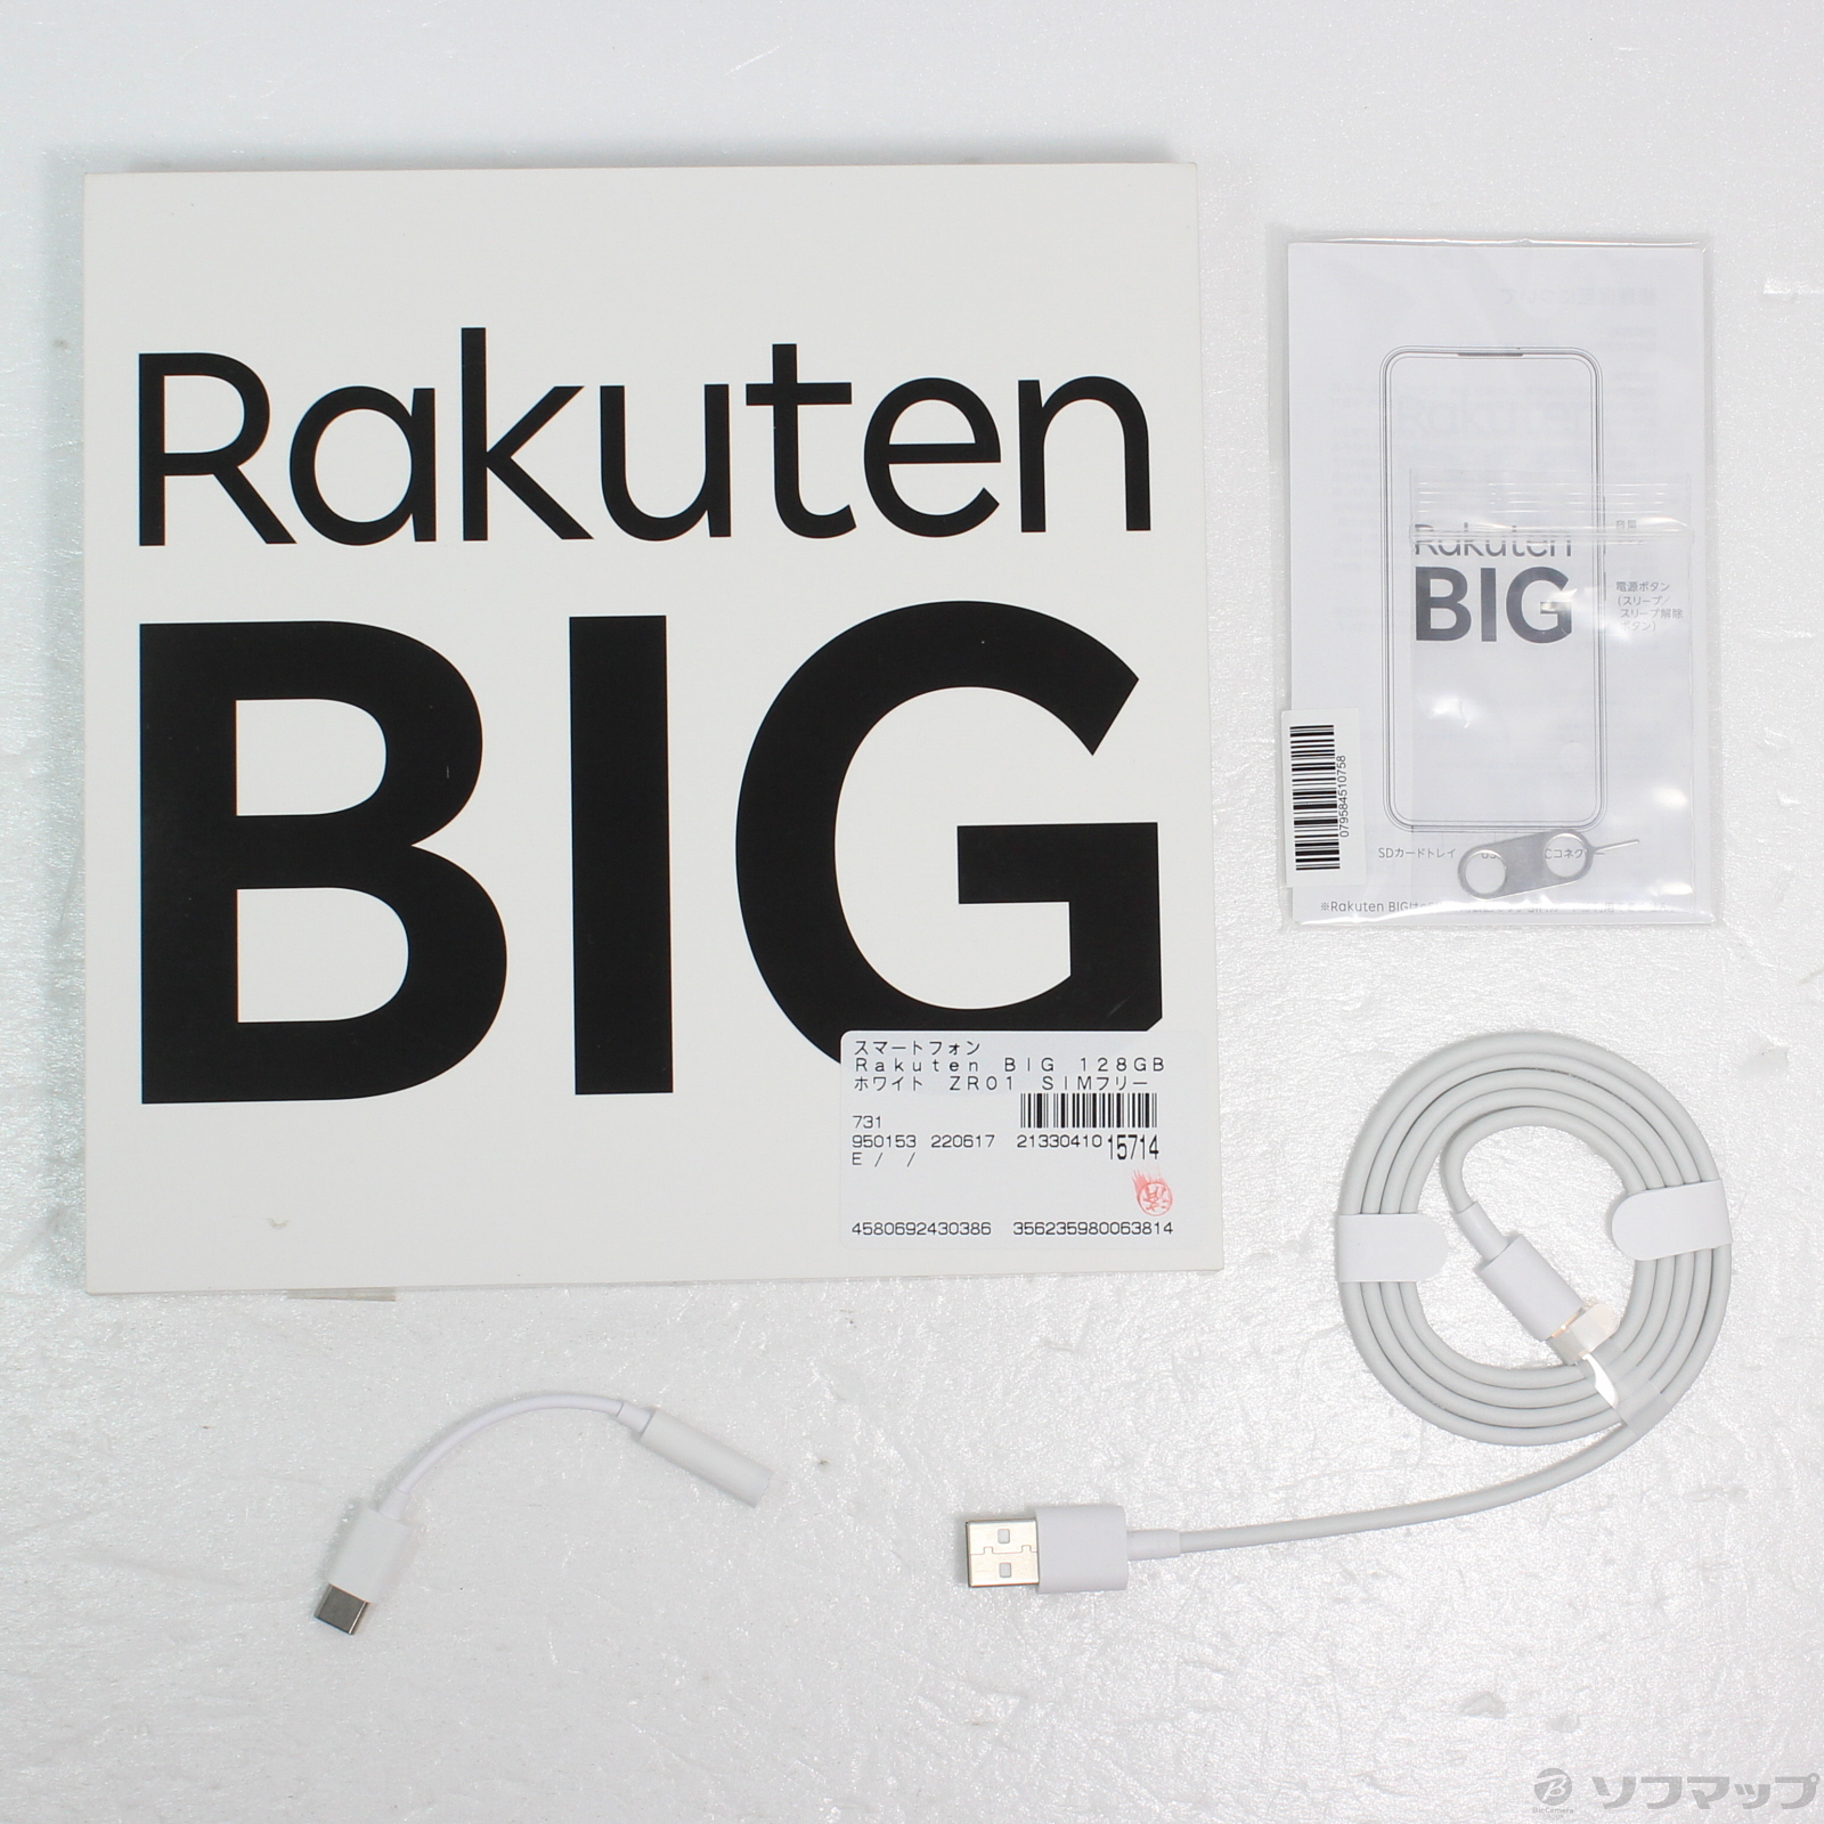 初の折りたたみスマホ Rakuten SIMフリー ZR01 ホワイト 128GB BIG スマートフォン本体